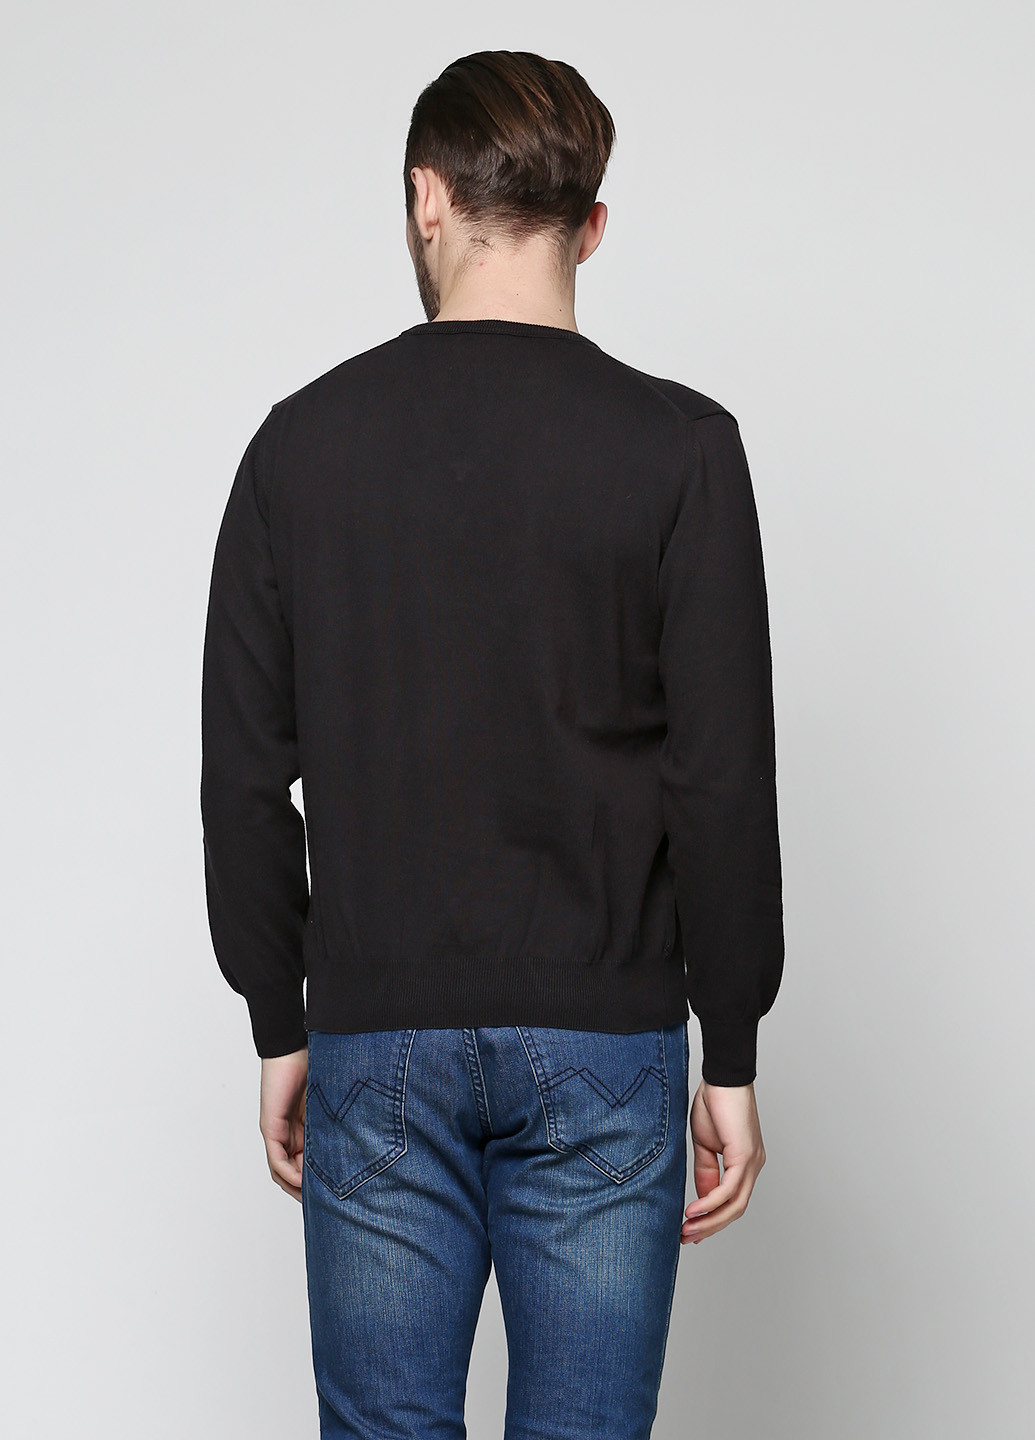 Черный демисезонный пуловер пуловер Barbieri